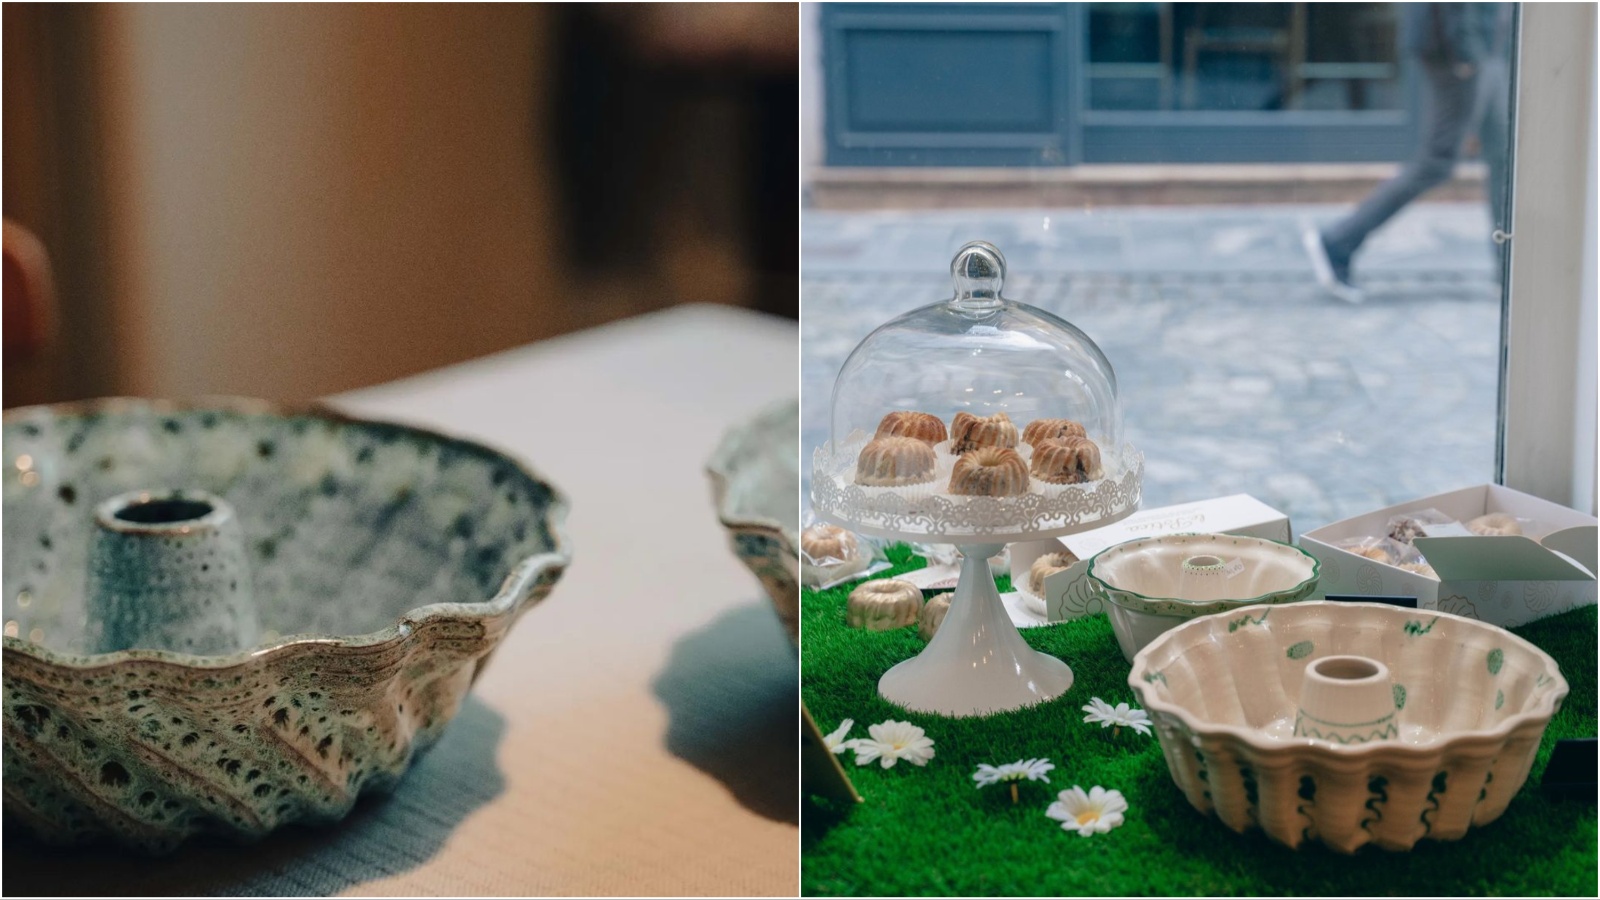 Lončić Pottery Studio izrađuje keramiku koja je spoj tradicije i minimalizma